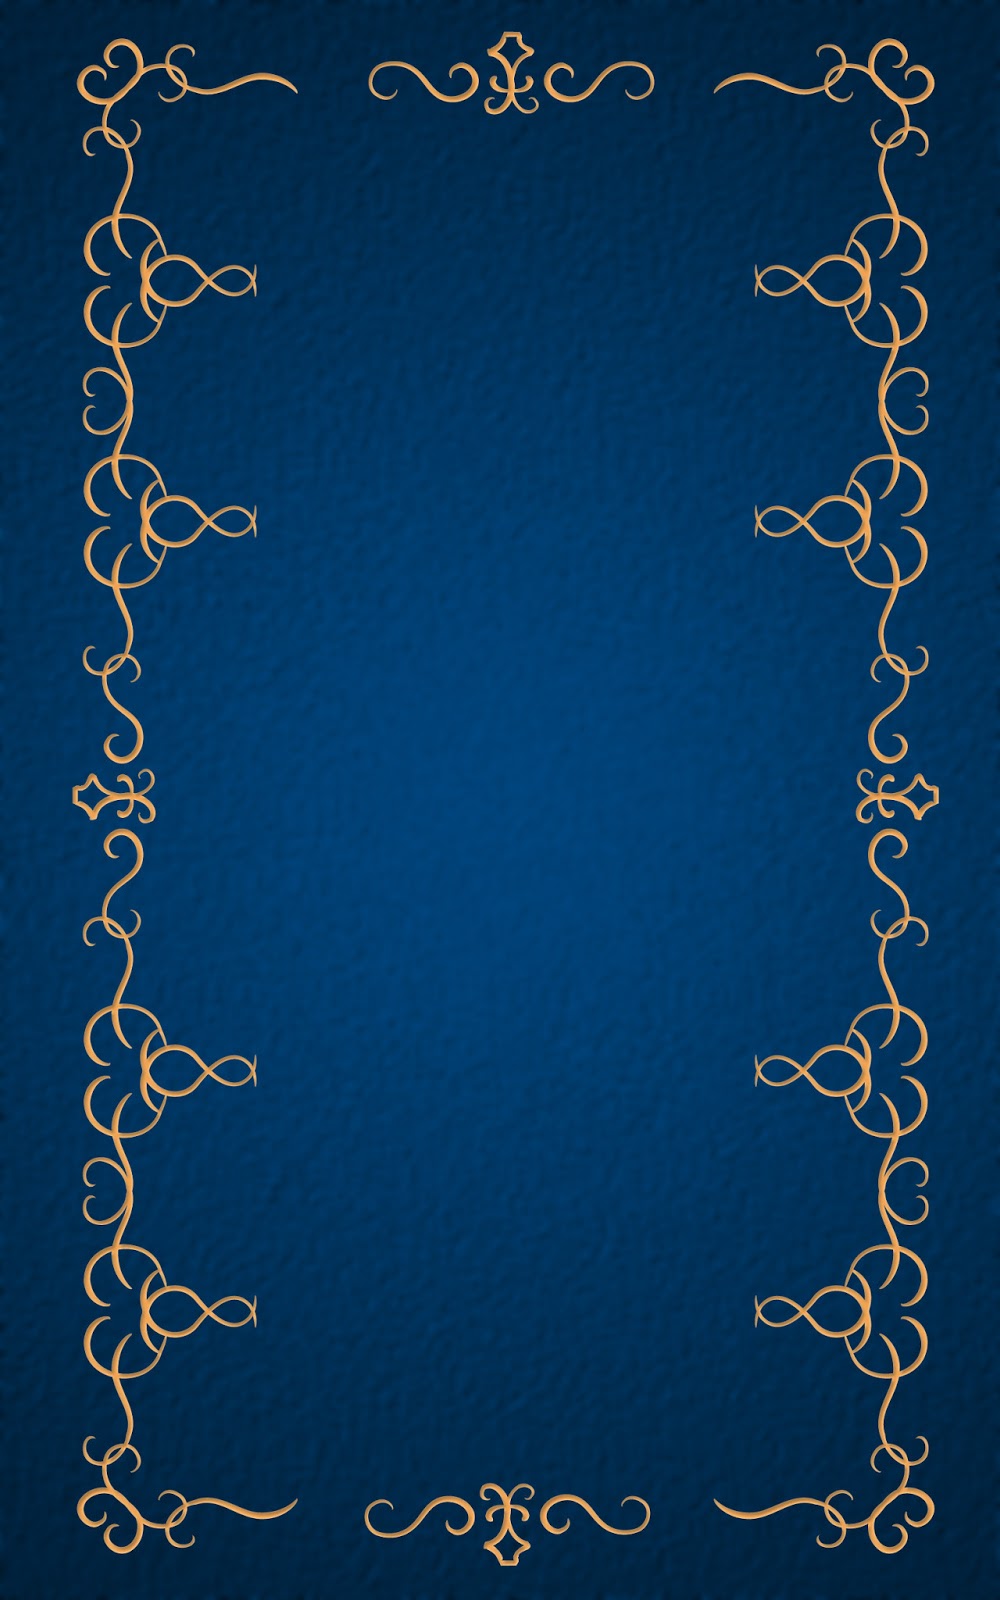 いーブックデザイン 電子書籍用表紙画像フリー素材 002 飾り罫 青